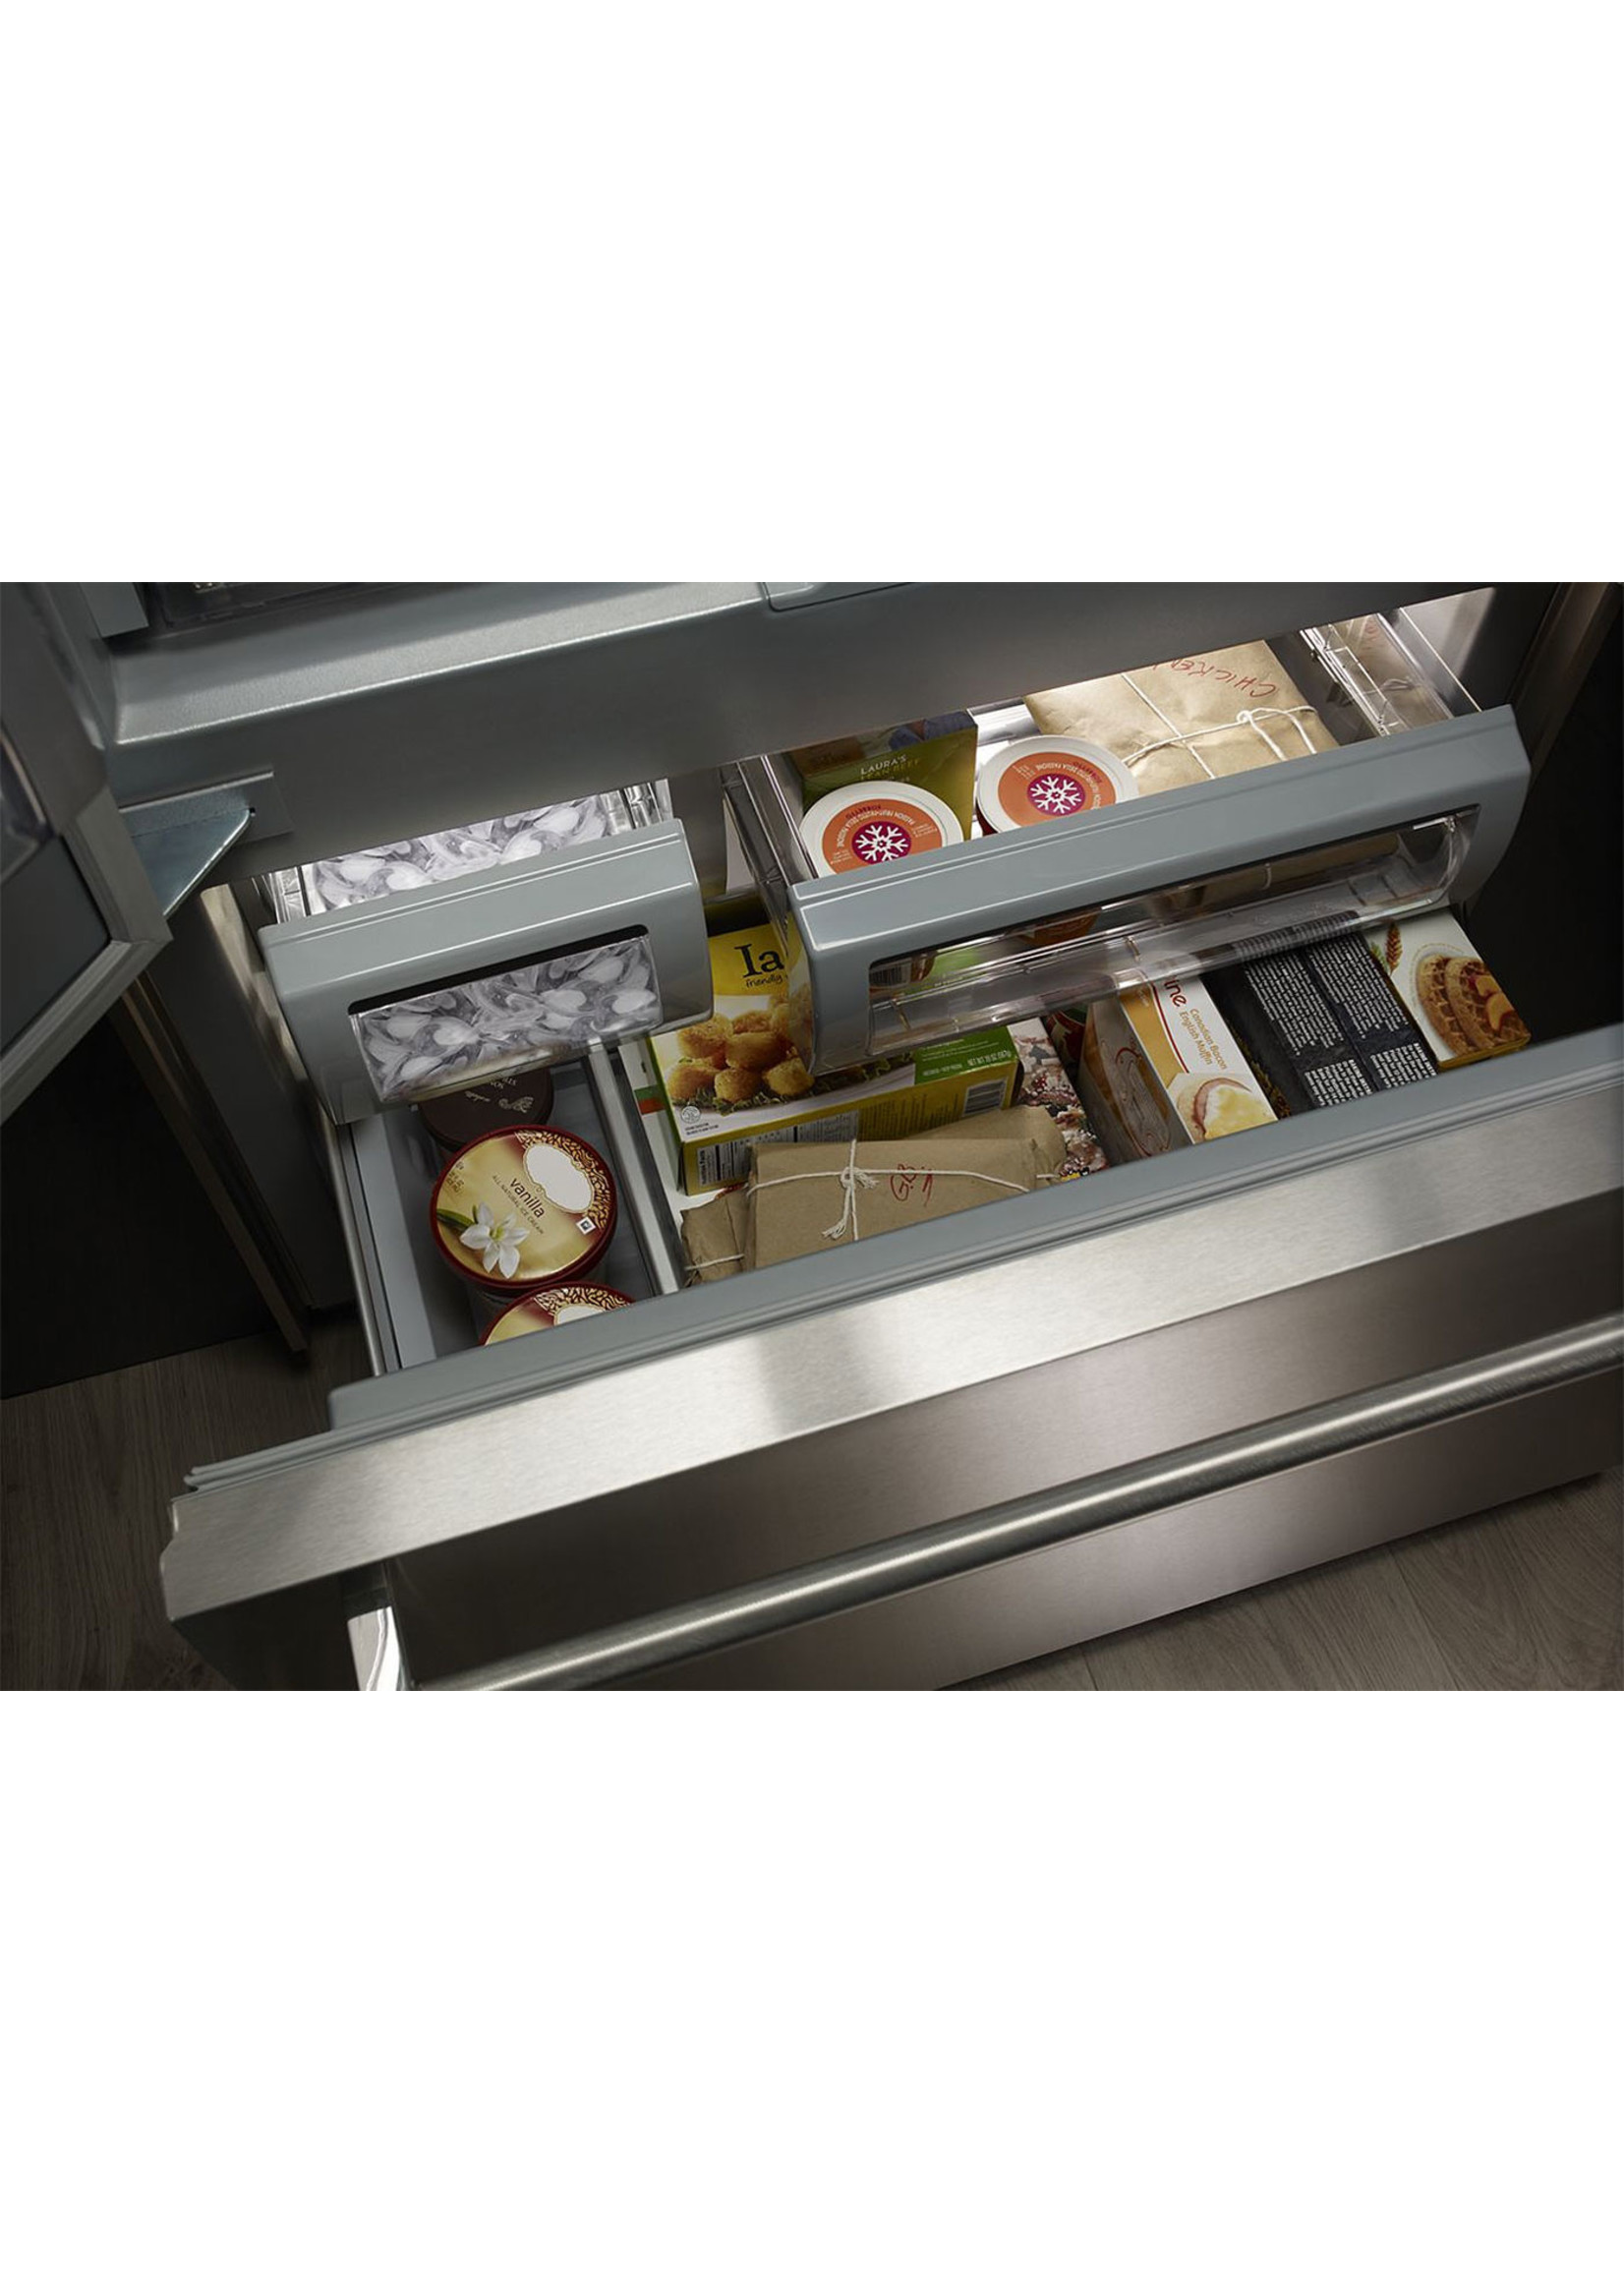 KITCHEN AID KitchenAid 24.2 cu. ft. Built-In French Door Refrigerator in Stainless Steel, Platinum Interior